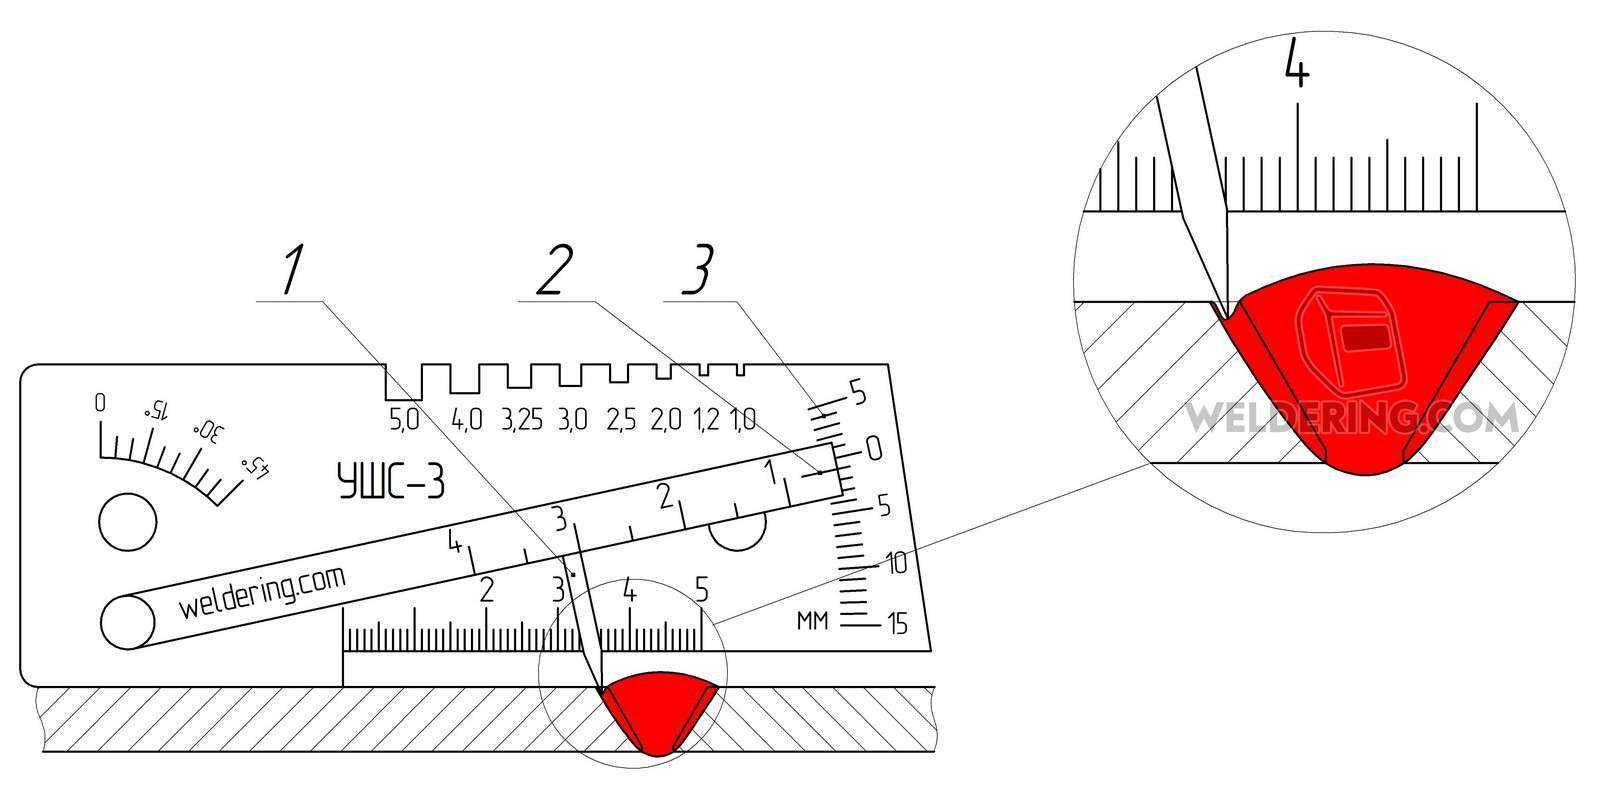 Особенности конструкции универсального шаблона сварщика ушс-3